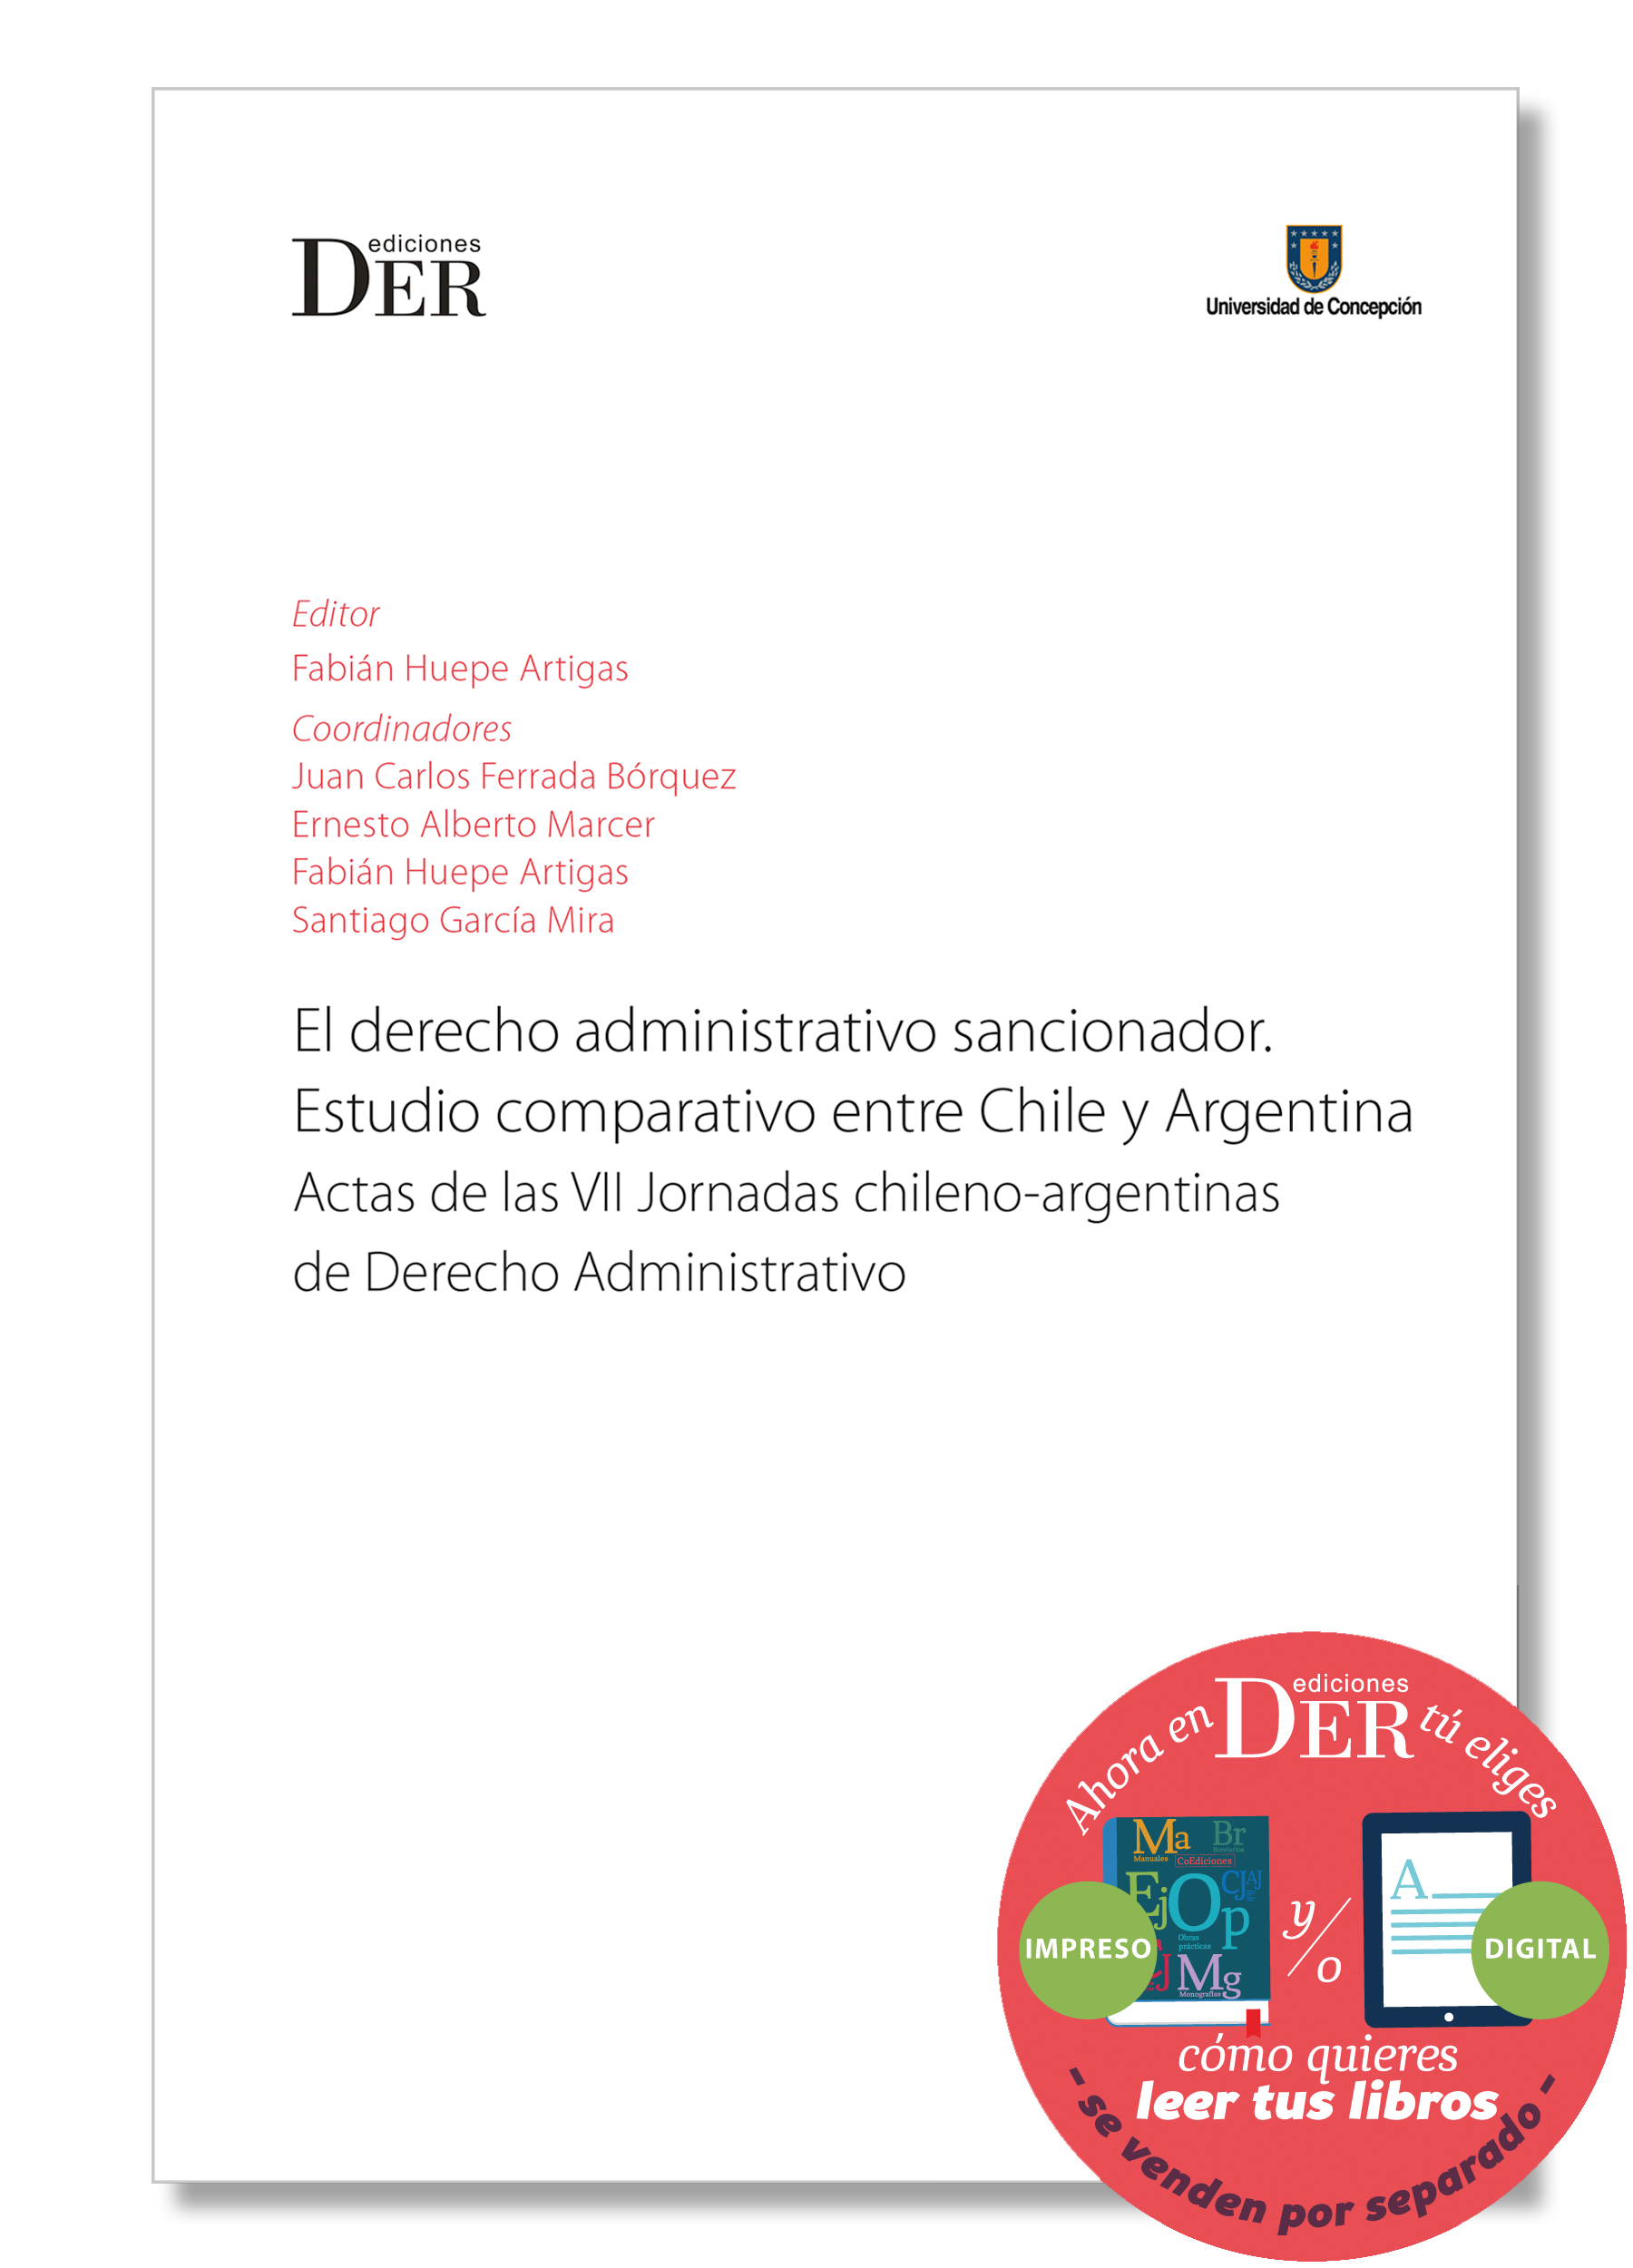 Ausencia cerca escritorio El derecho administrativo sancionador - Fabian Huepe - DER Ediciones